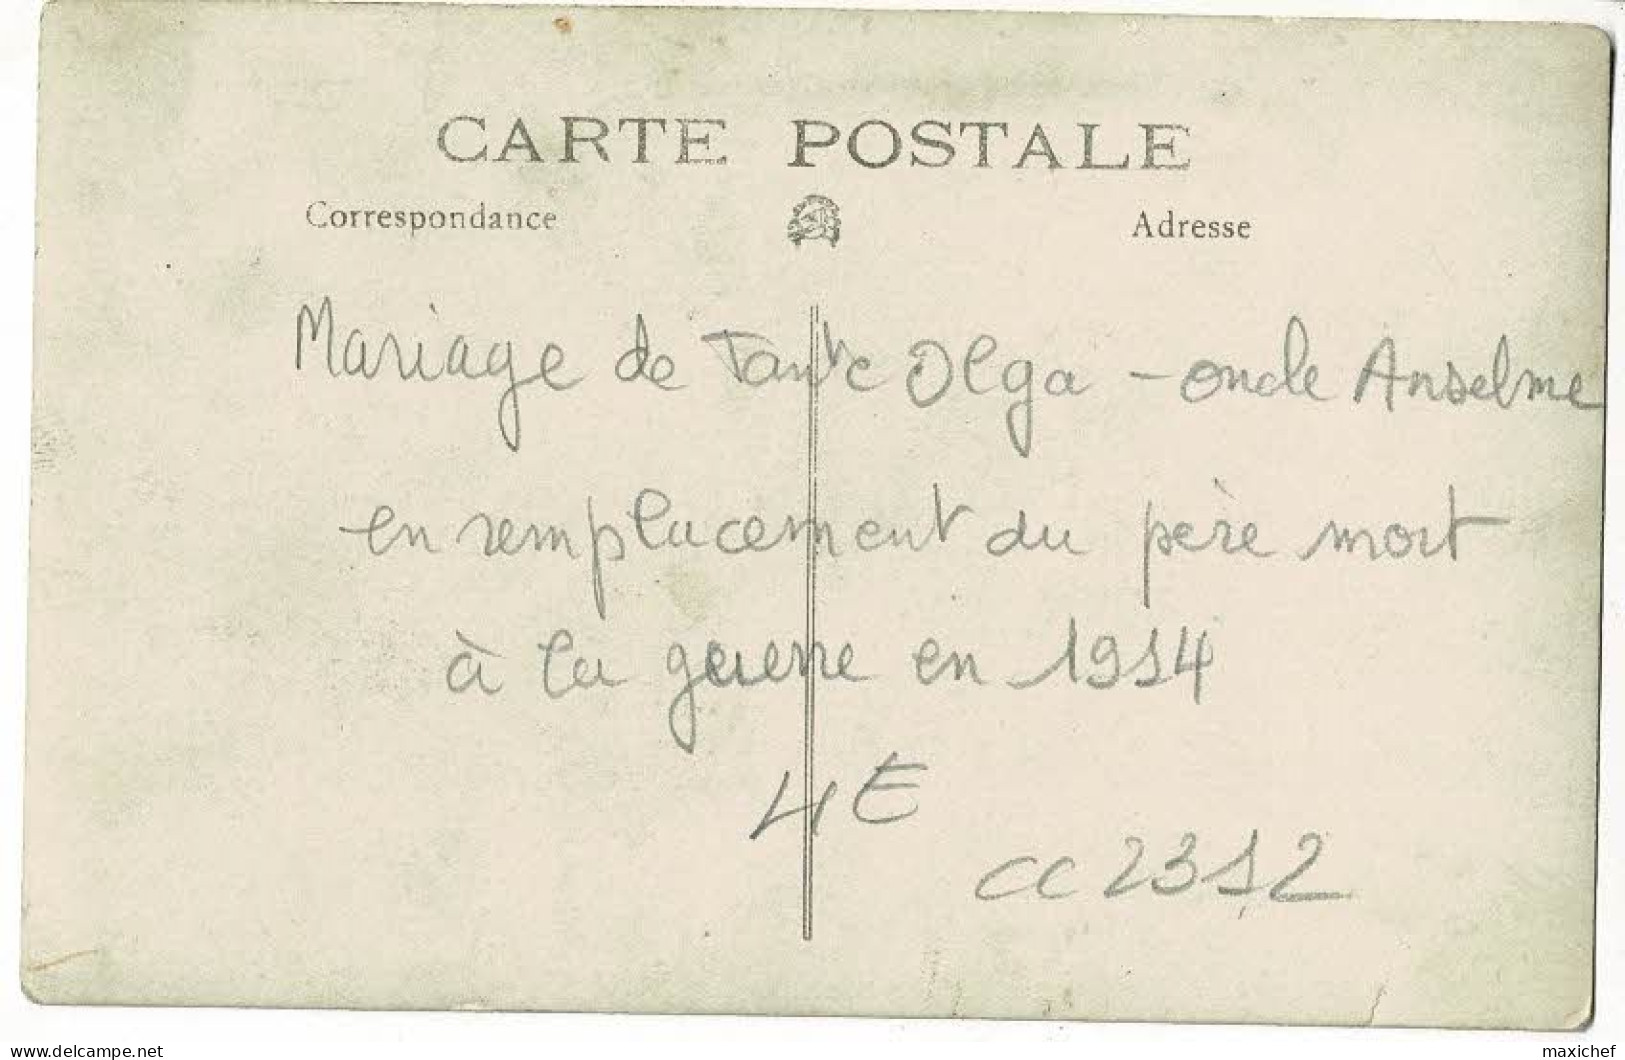 Carte Photo - Mariage De Tante Olga, L'oncle Anselme Remplace Le Père Mort à La GG - 1931 - Genealogie